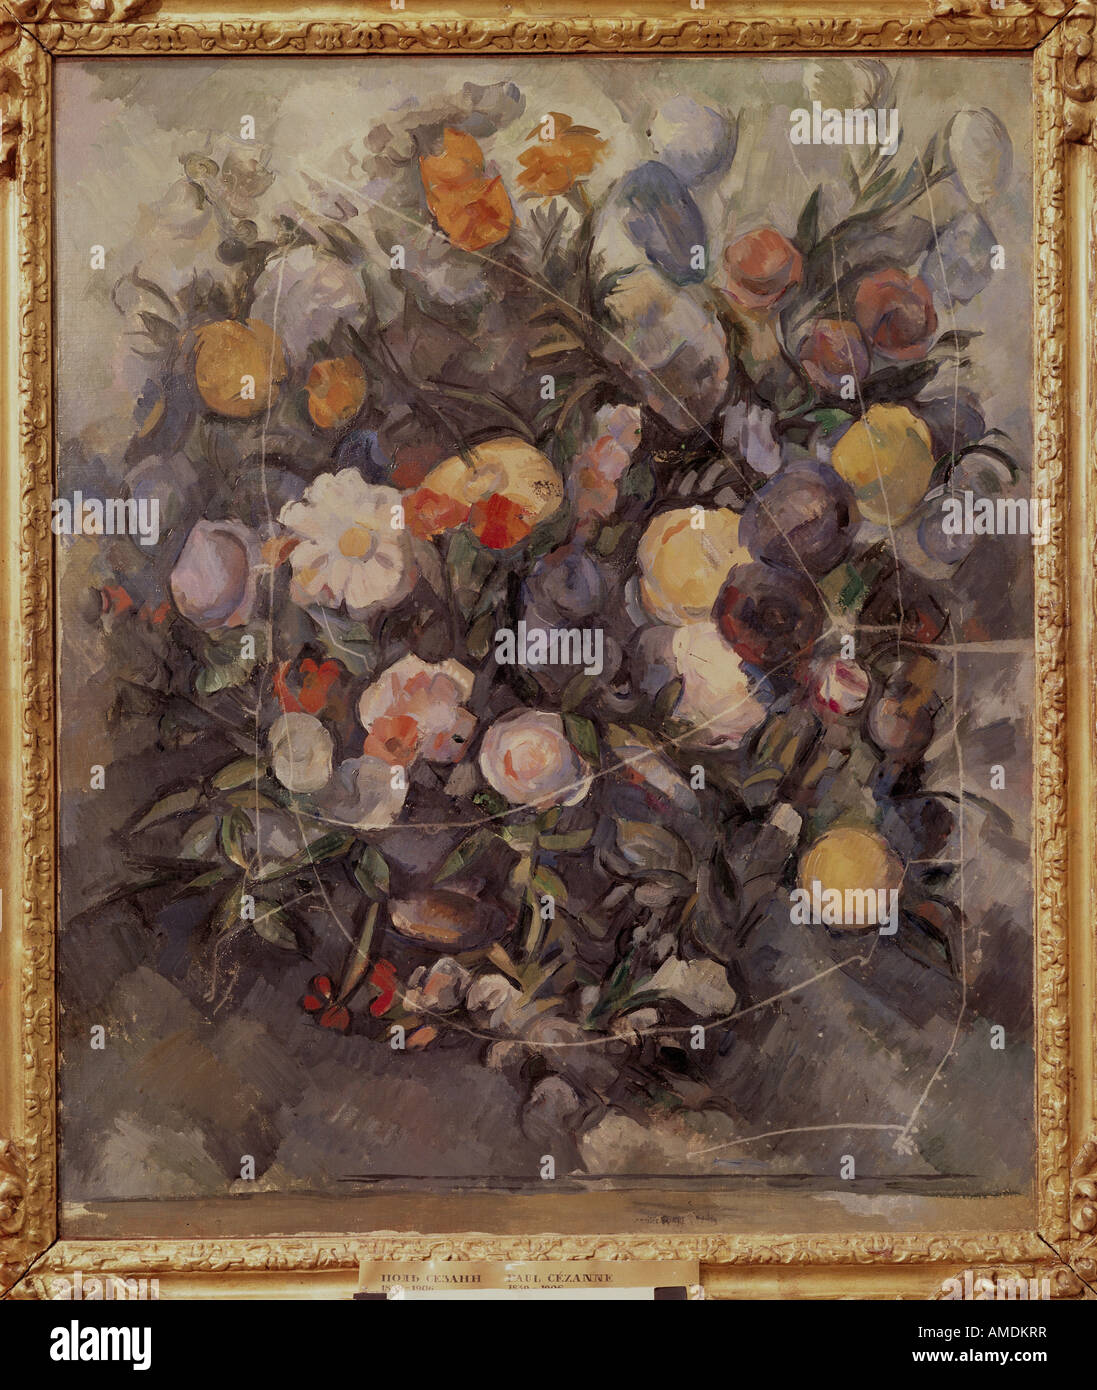 "Bildende Kunst, Cezanne, Paul (1839-1906), Malerei,"Blumen"um 1900, Öl auf Leinwand, Puschkin-Museum, Moskau, Stills, Fren Stockfoto